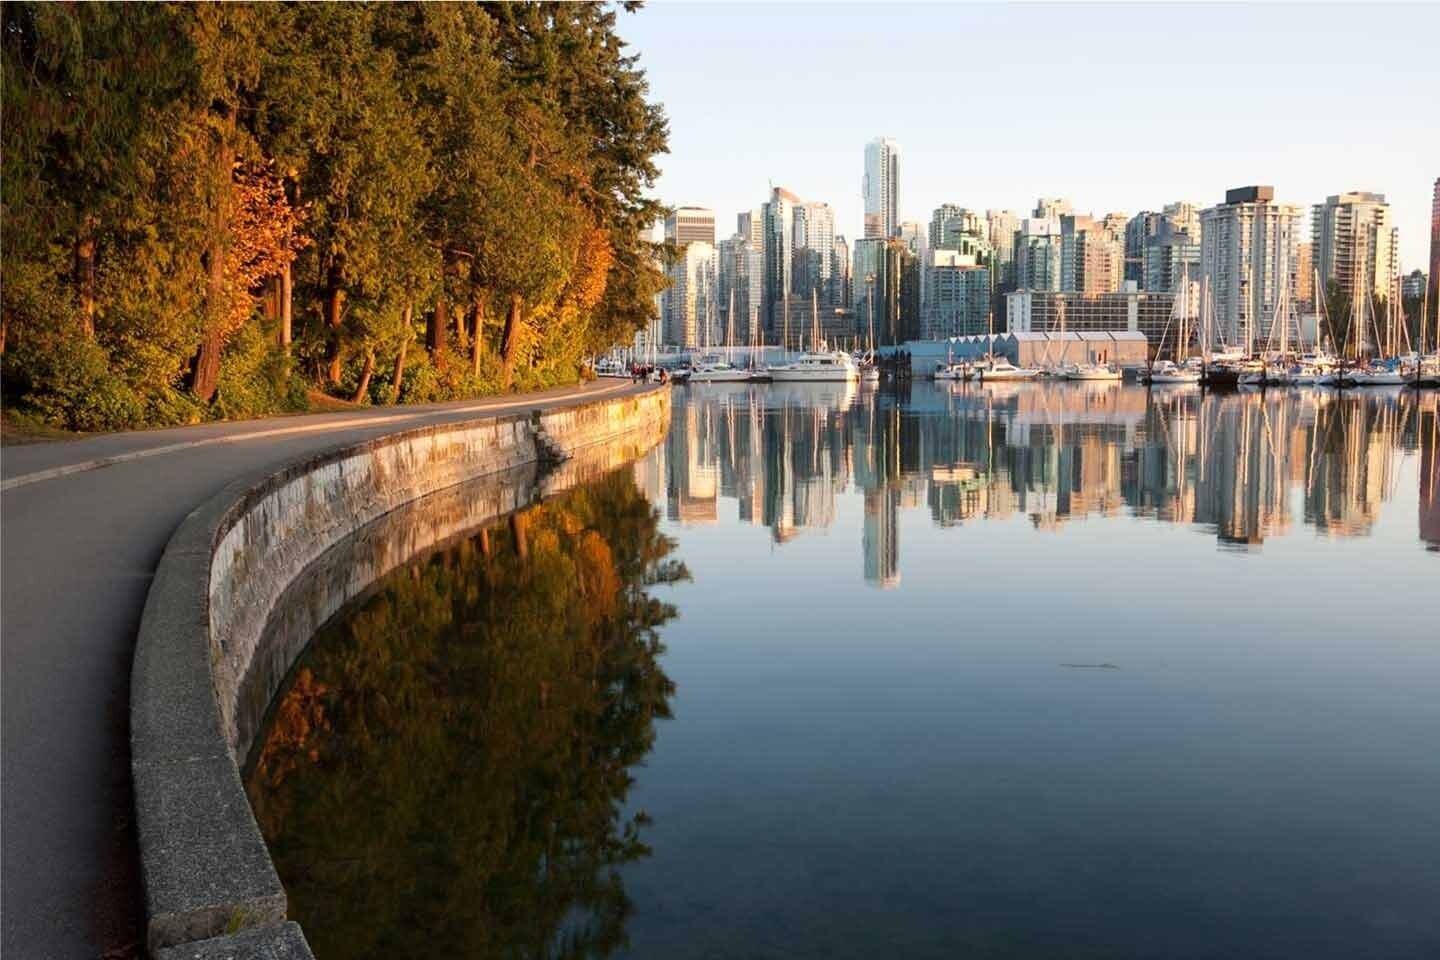 Harbour walkway in Vancouver's Stanley Park